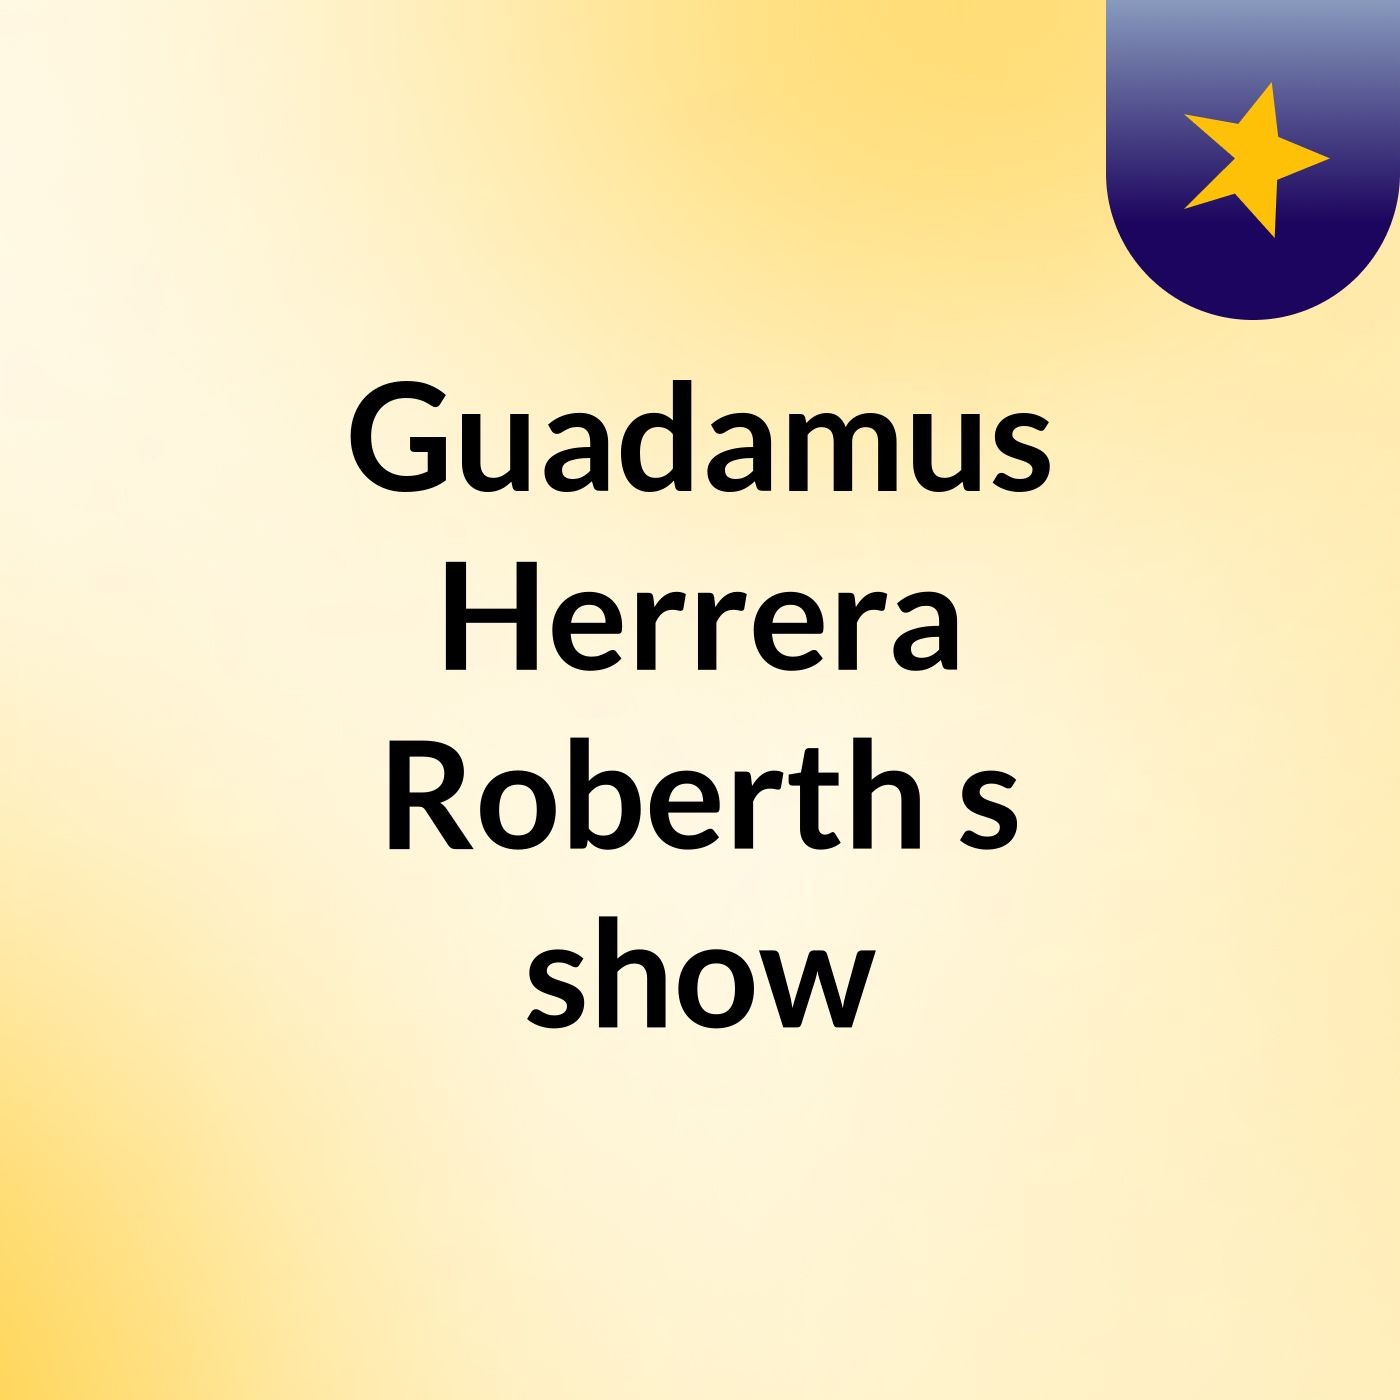 Guadamus Herrera Roberth's show